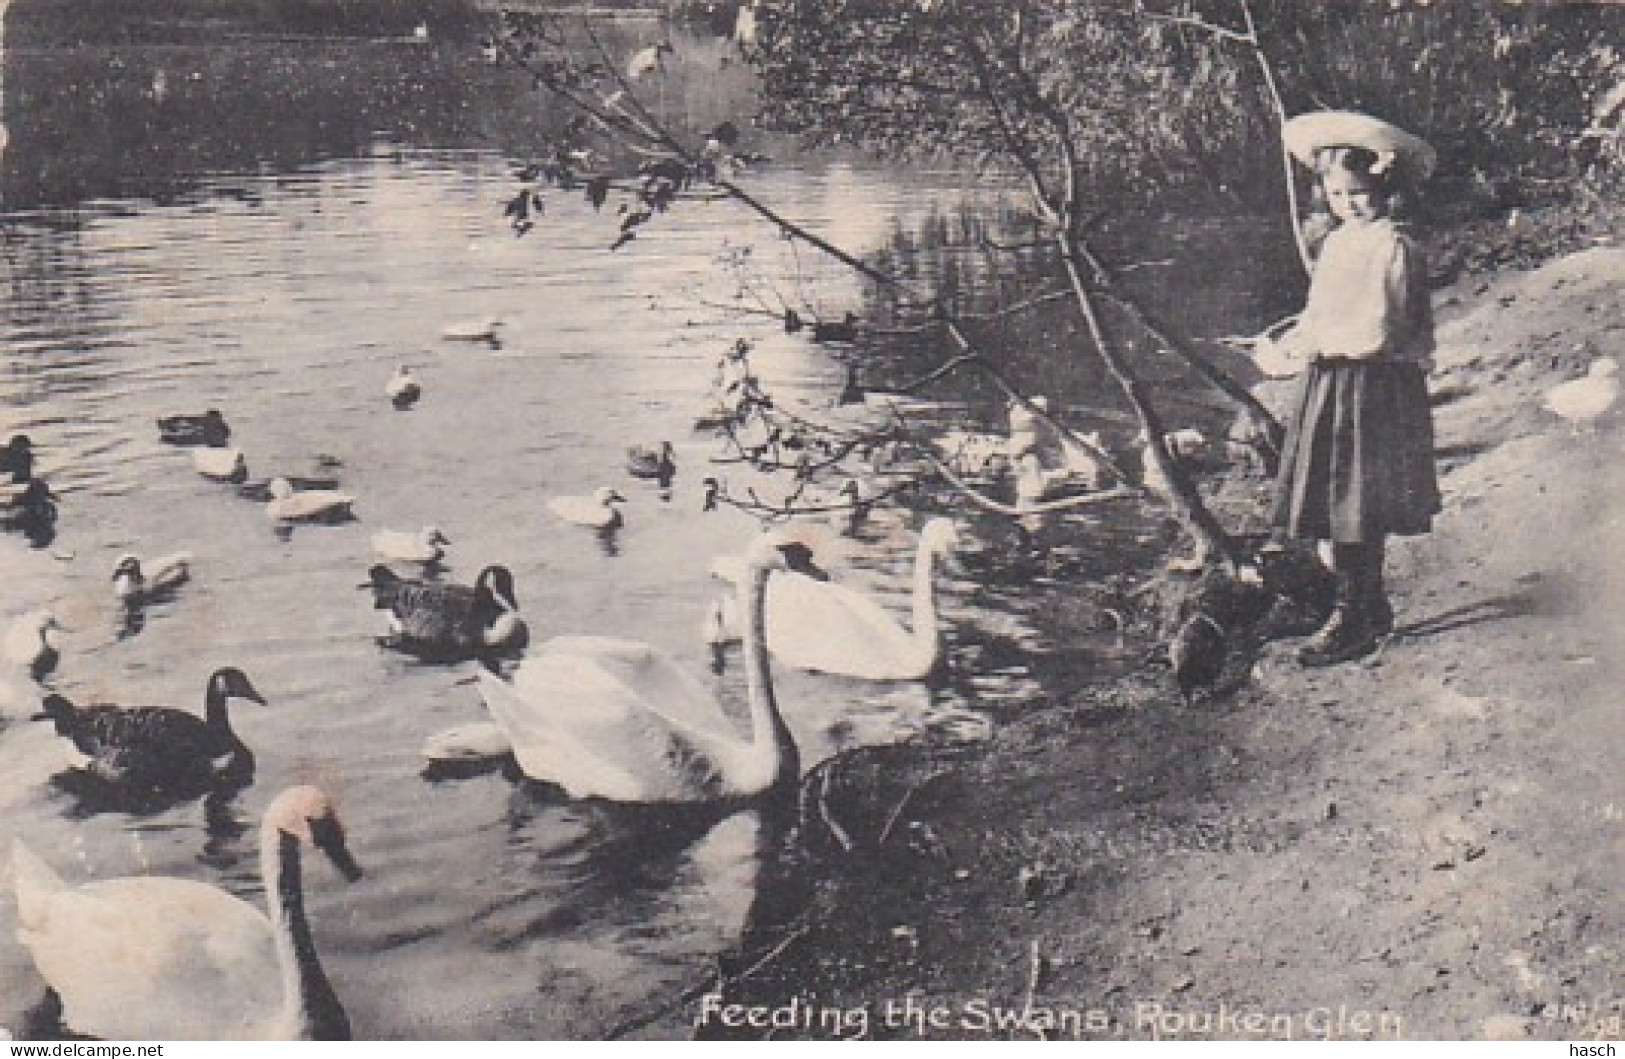 487466Rouken Glen, Feeding The Swans. 1920.  - Renfrewshire